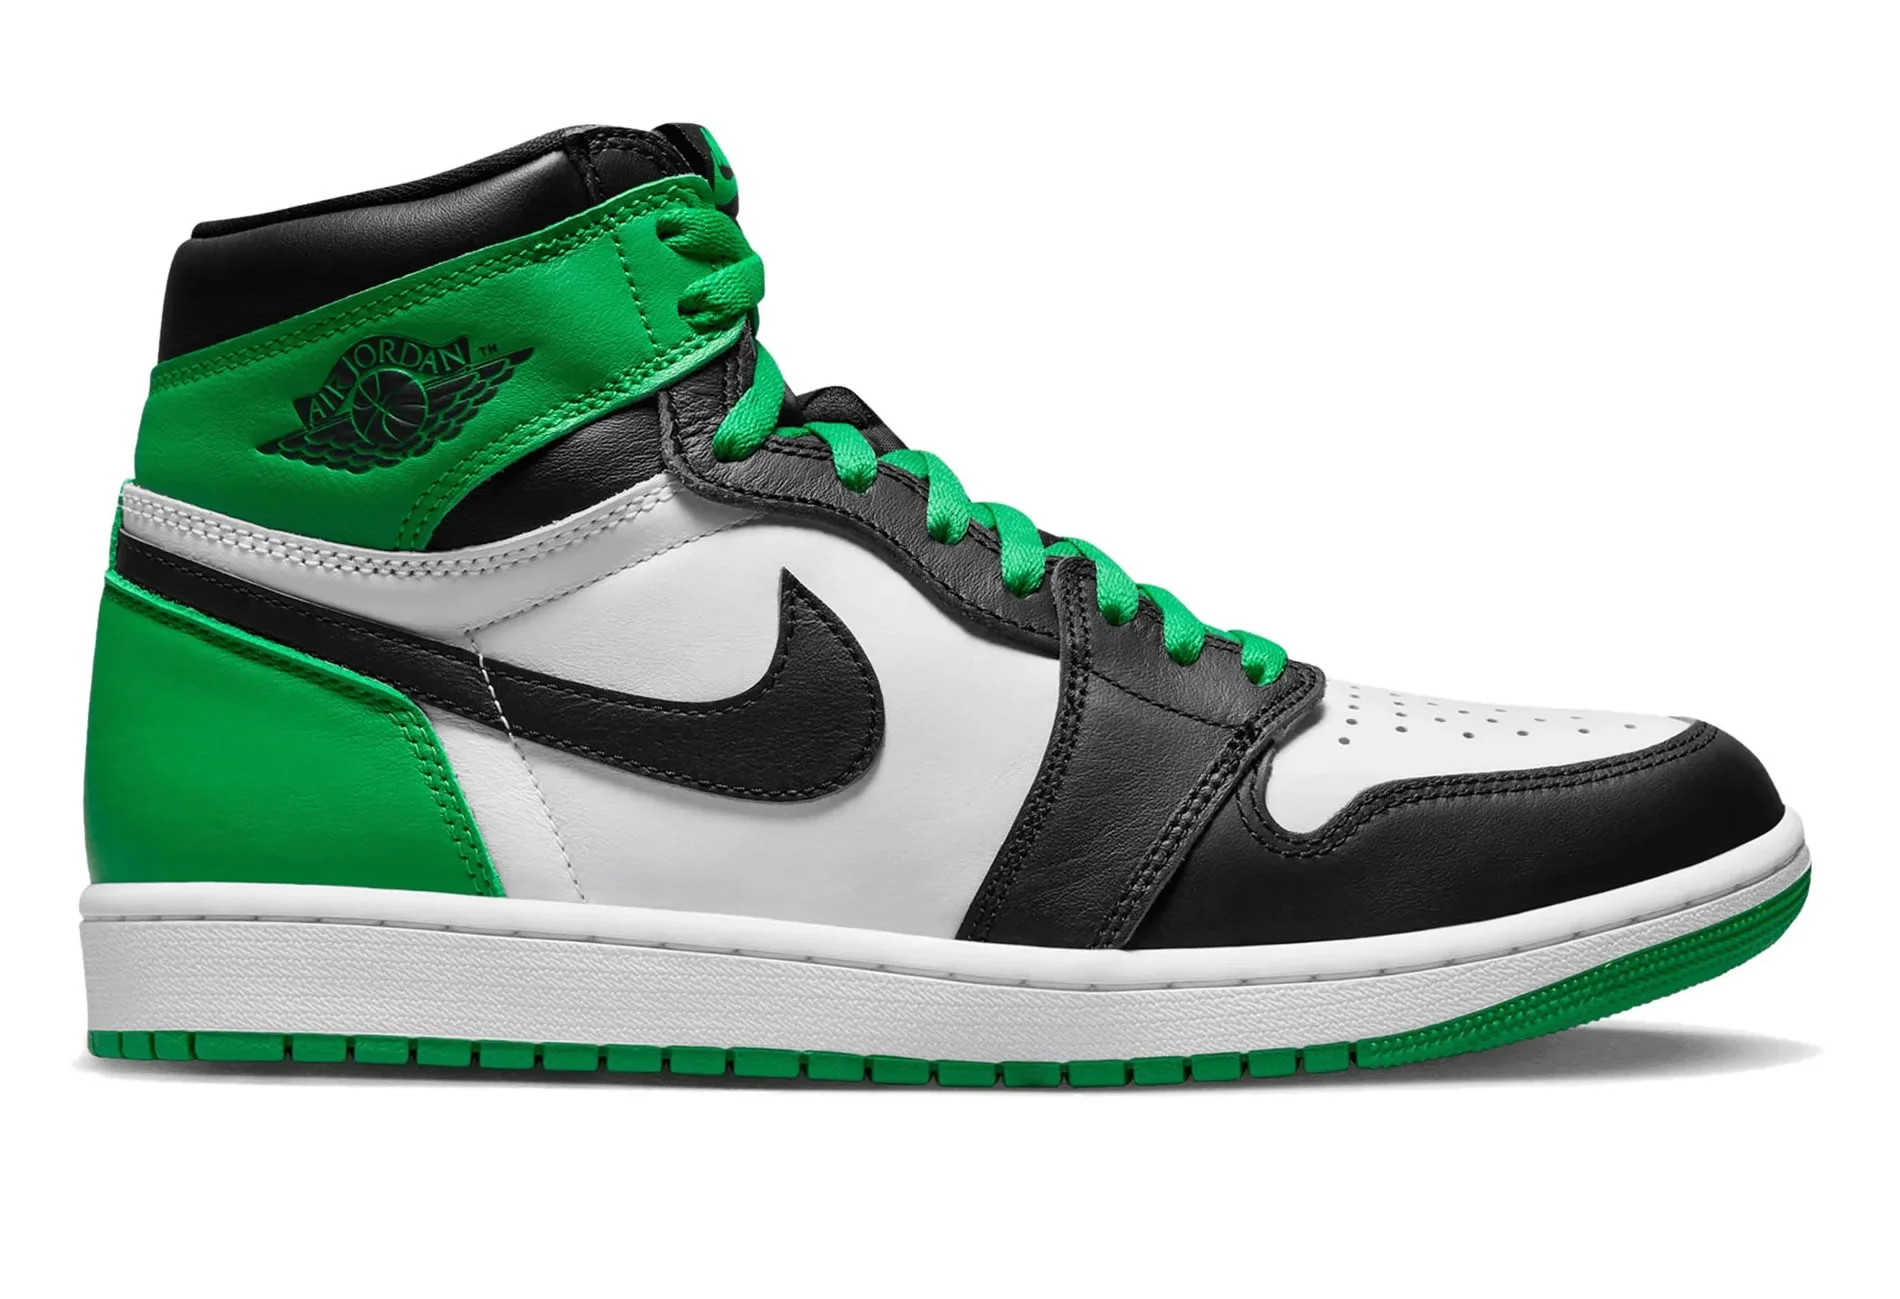 Air Jordan 1 Retro High Og Lucky Green Dz5485 031 Ljr Batch Sneakers (2) - www.ljrofficial.com